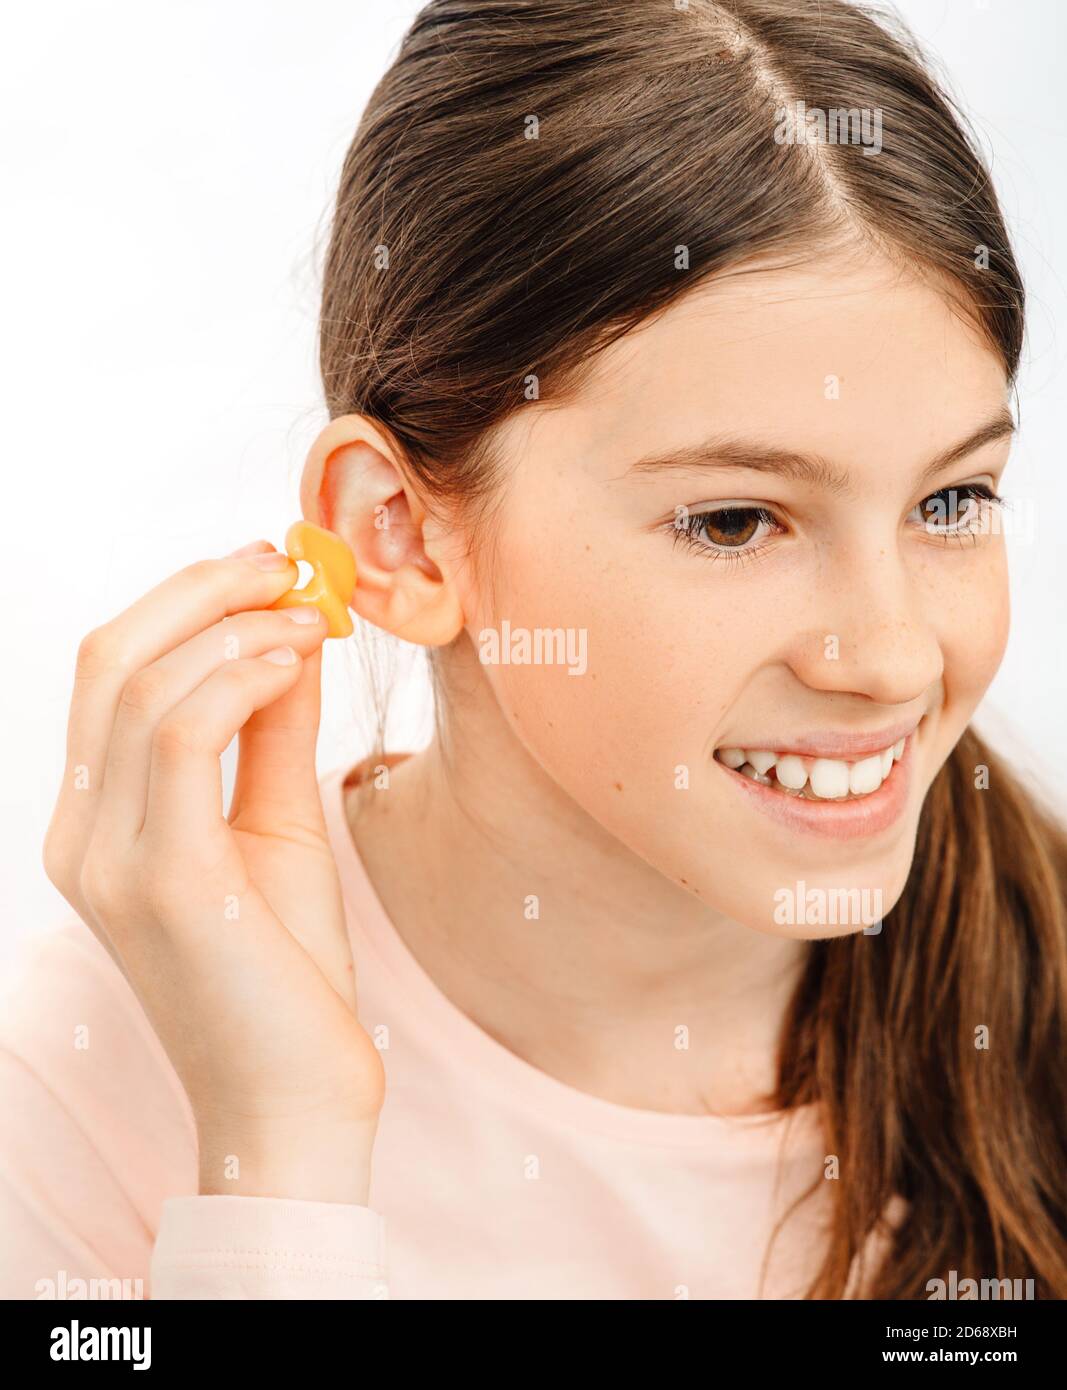 Tappi auricolari individuali per bambini. Ragazza che tiene singoli tappi per le orecchie vicino all'orecchio, primo piano Foto Stock